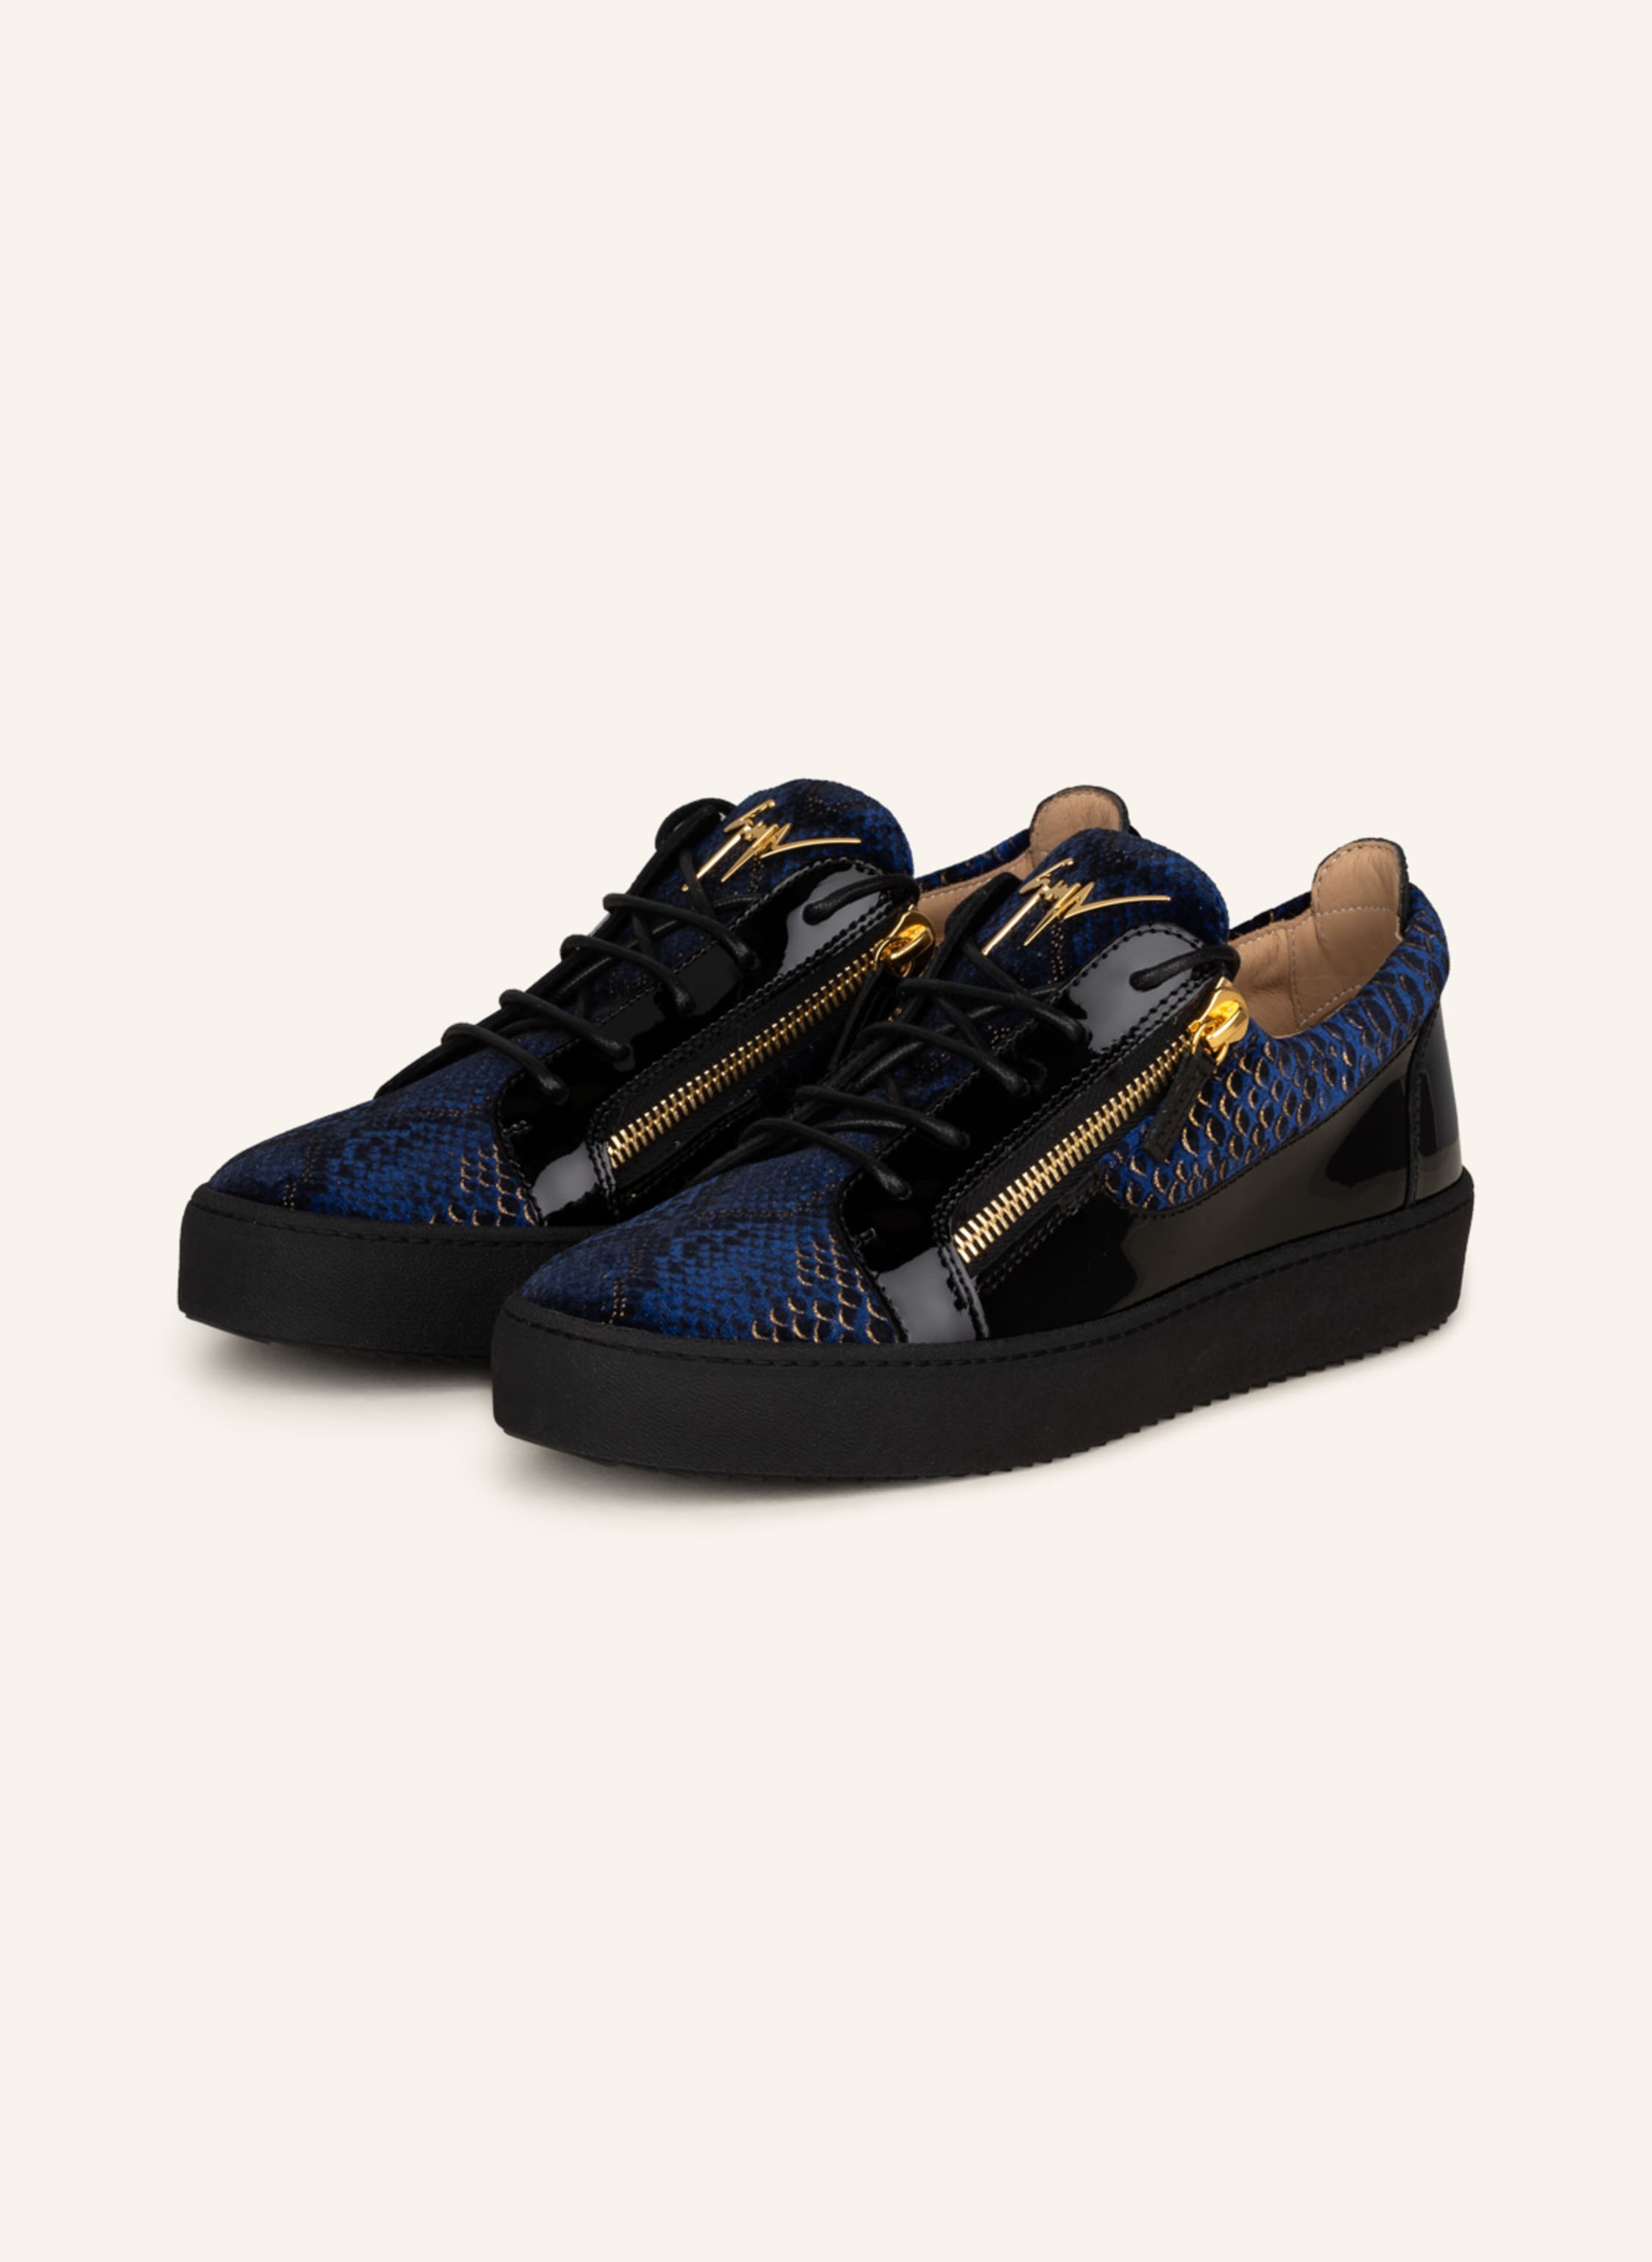 GIUSEPPE ZANOTTI DESIGN Sneakers FRANKIE in black/ dark blue